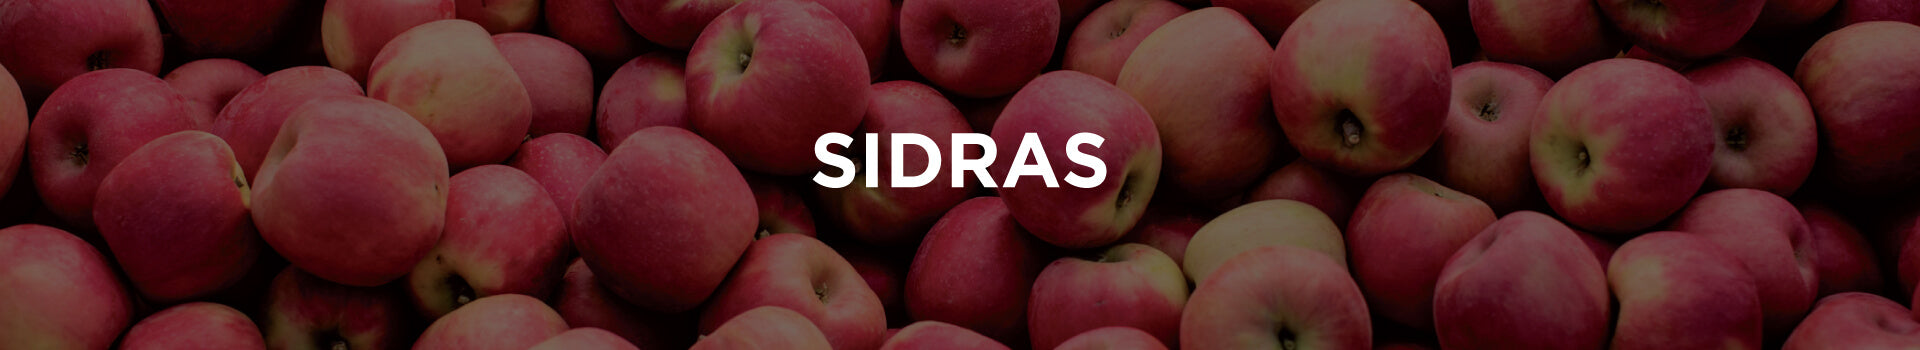 Sidras